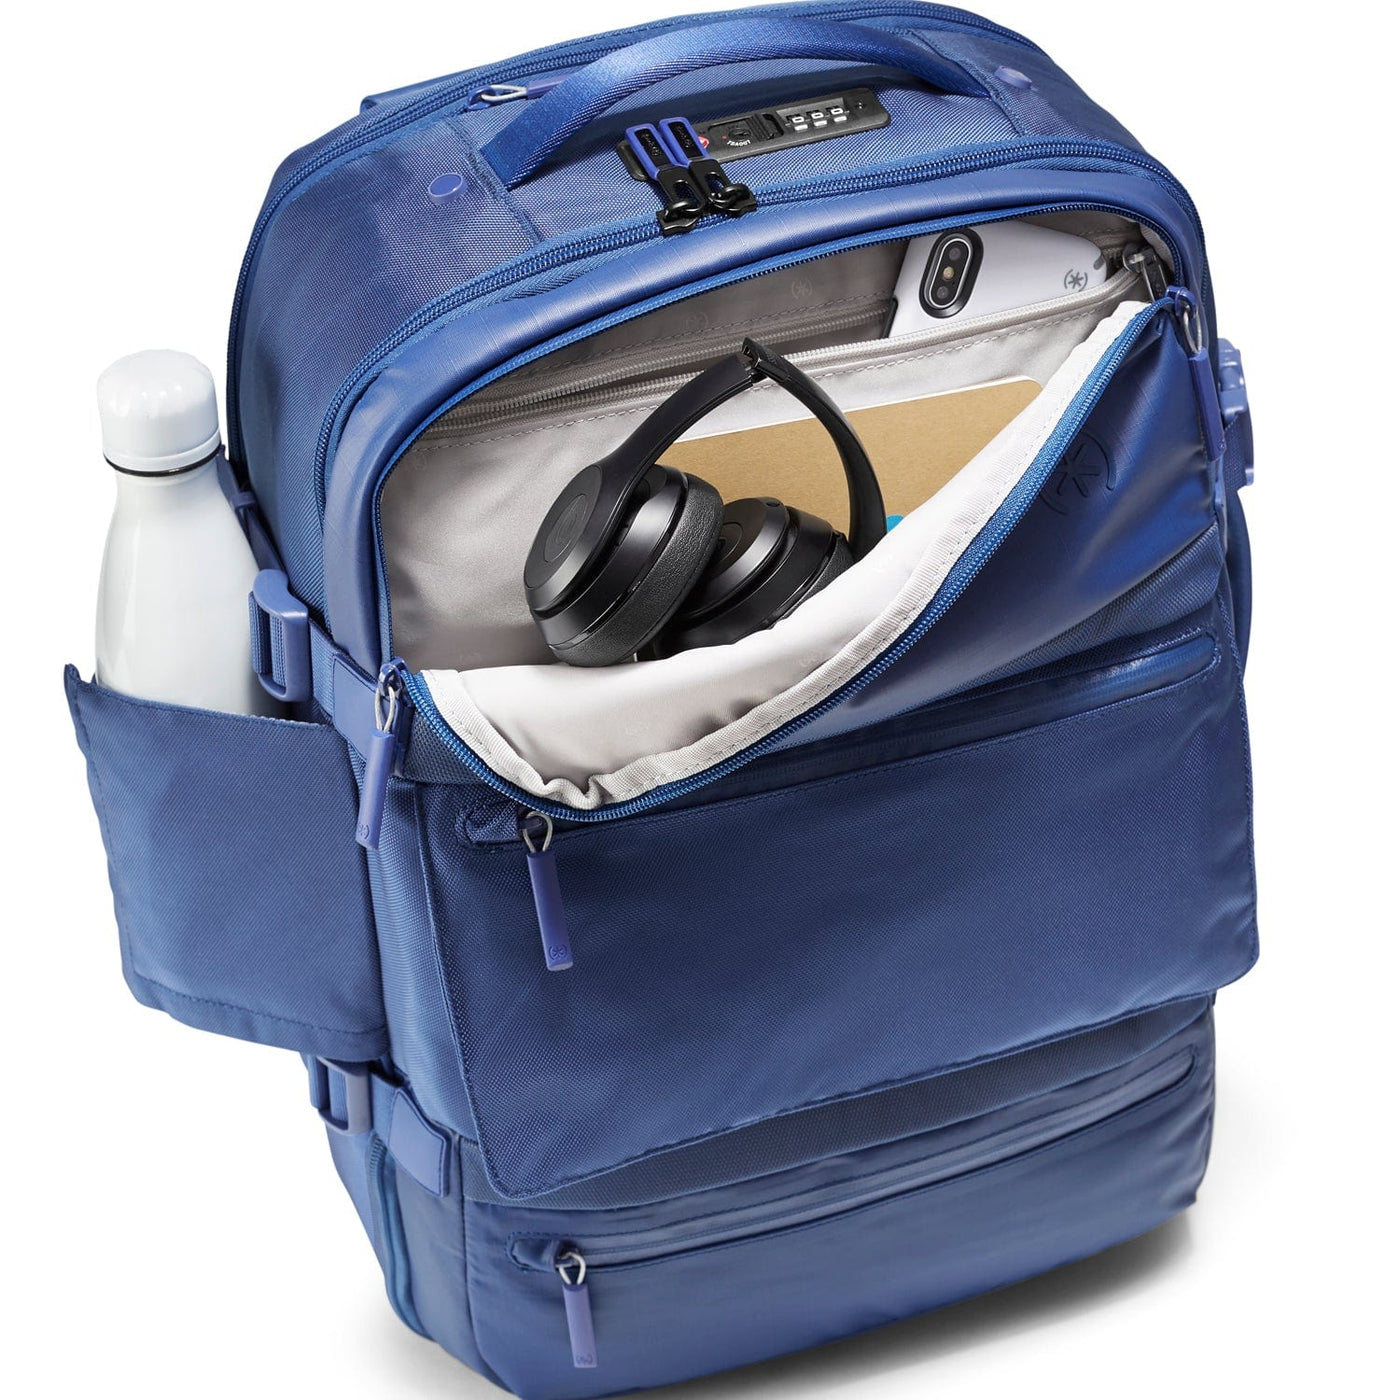 Speck Transfer Pro 26L Backpack Best Transfer Pro 26L Backpack - $79.99